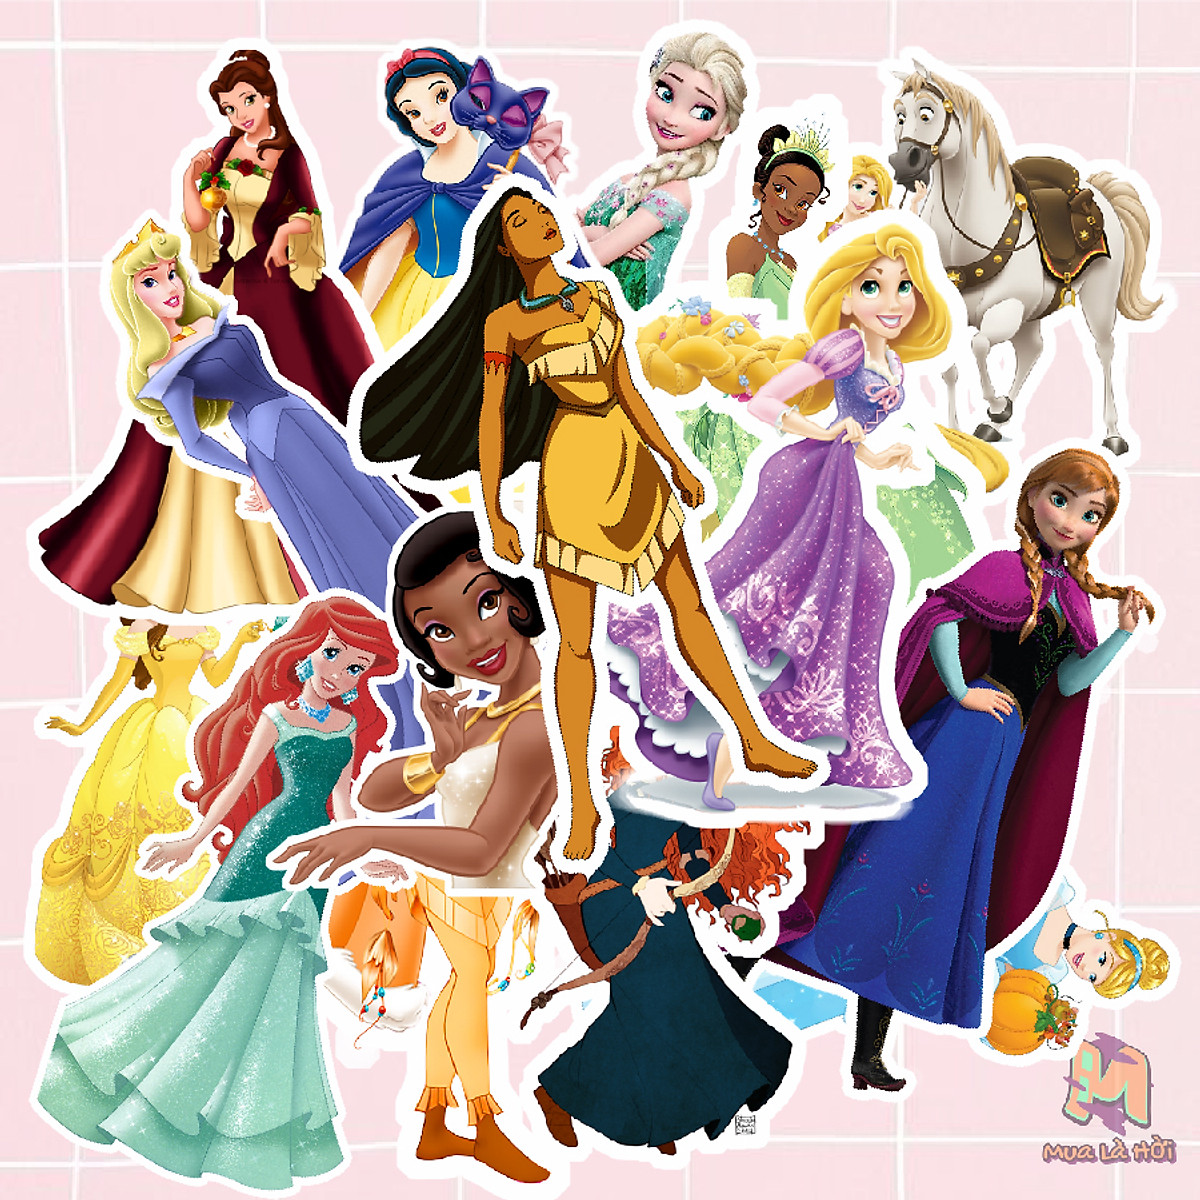 Mua Miếng dán Stickers In Hình Công chúa Disney - 10 Sticker tại ...